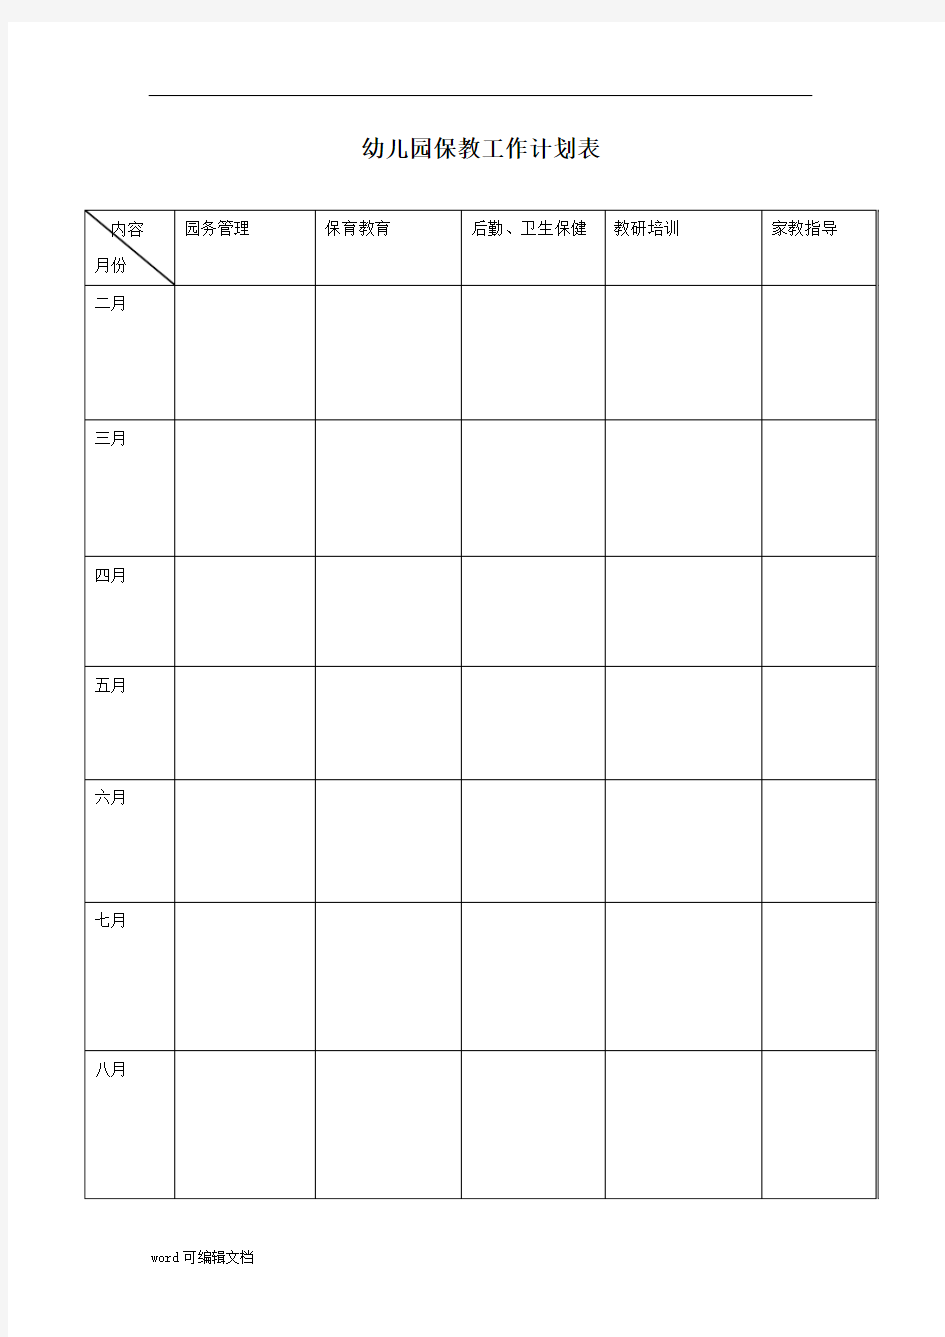 【幼儿园】保教工作月计划表